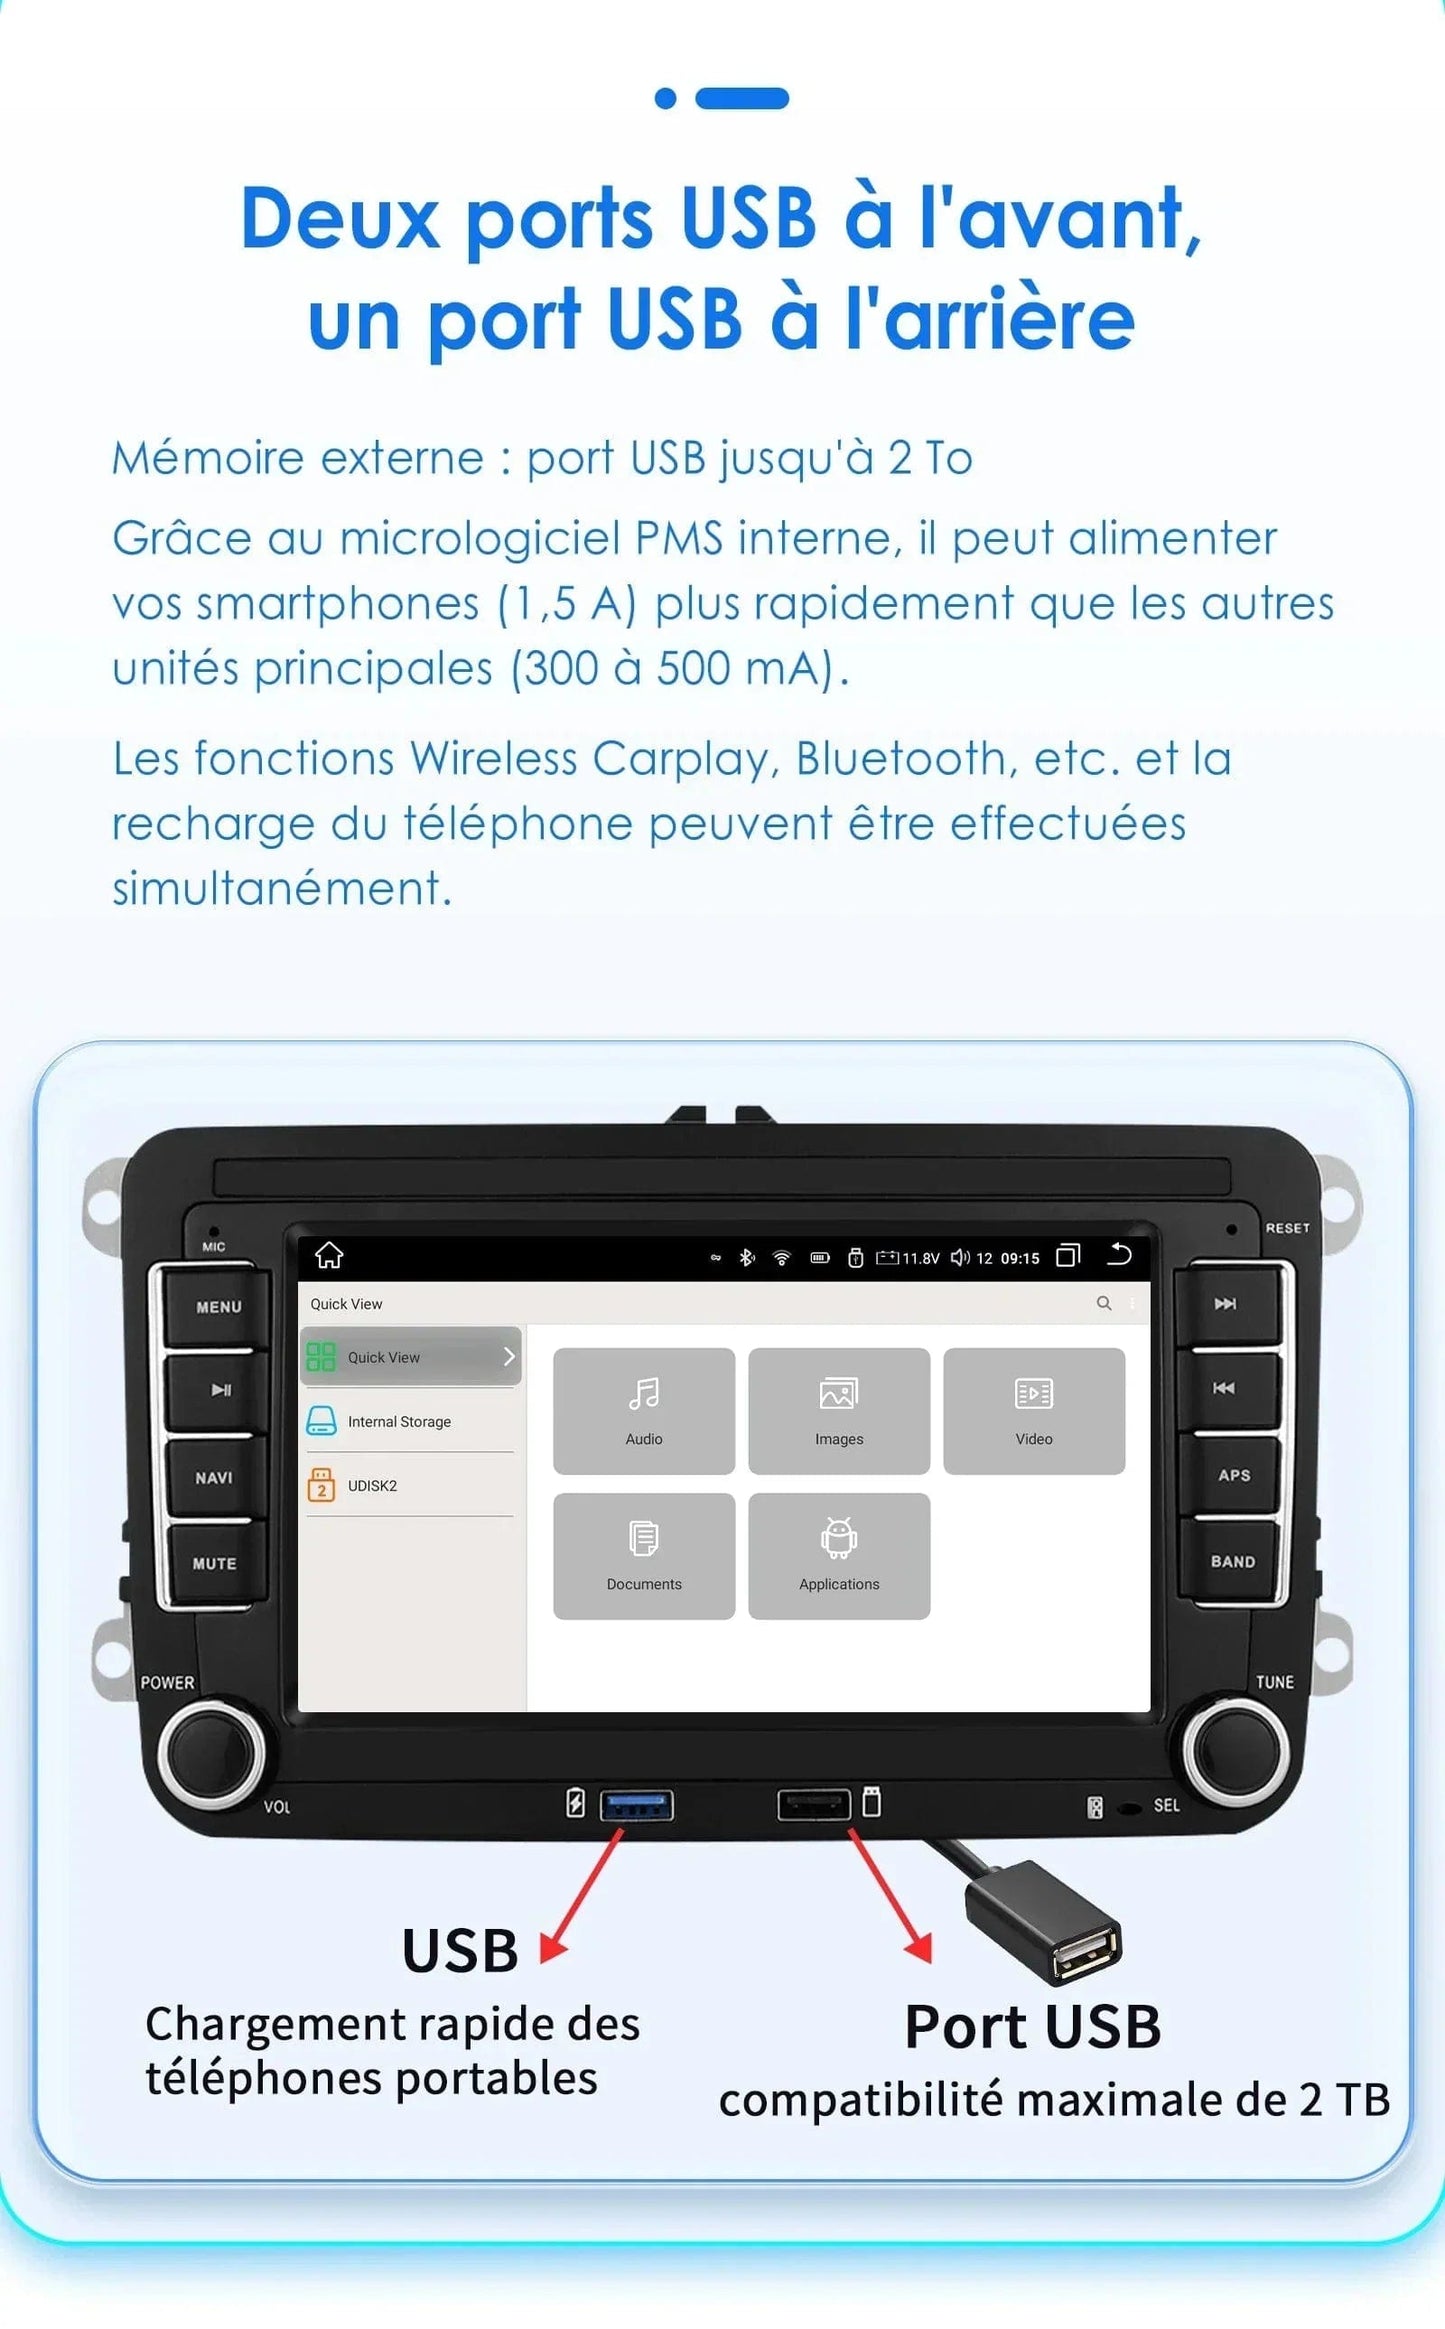 Autoradio connecté Android Auto et Apple CarPlay pour Volkswagen VW Scirocco (2008 à 2013)